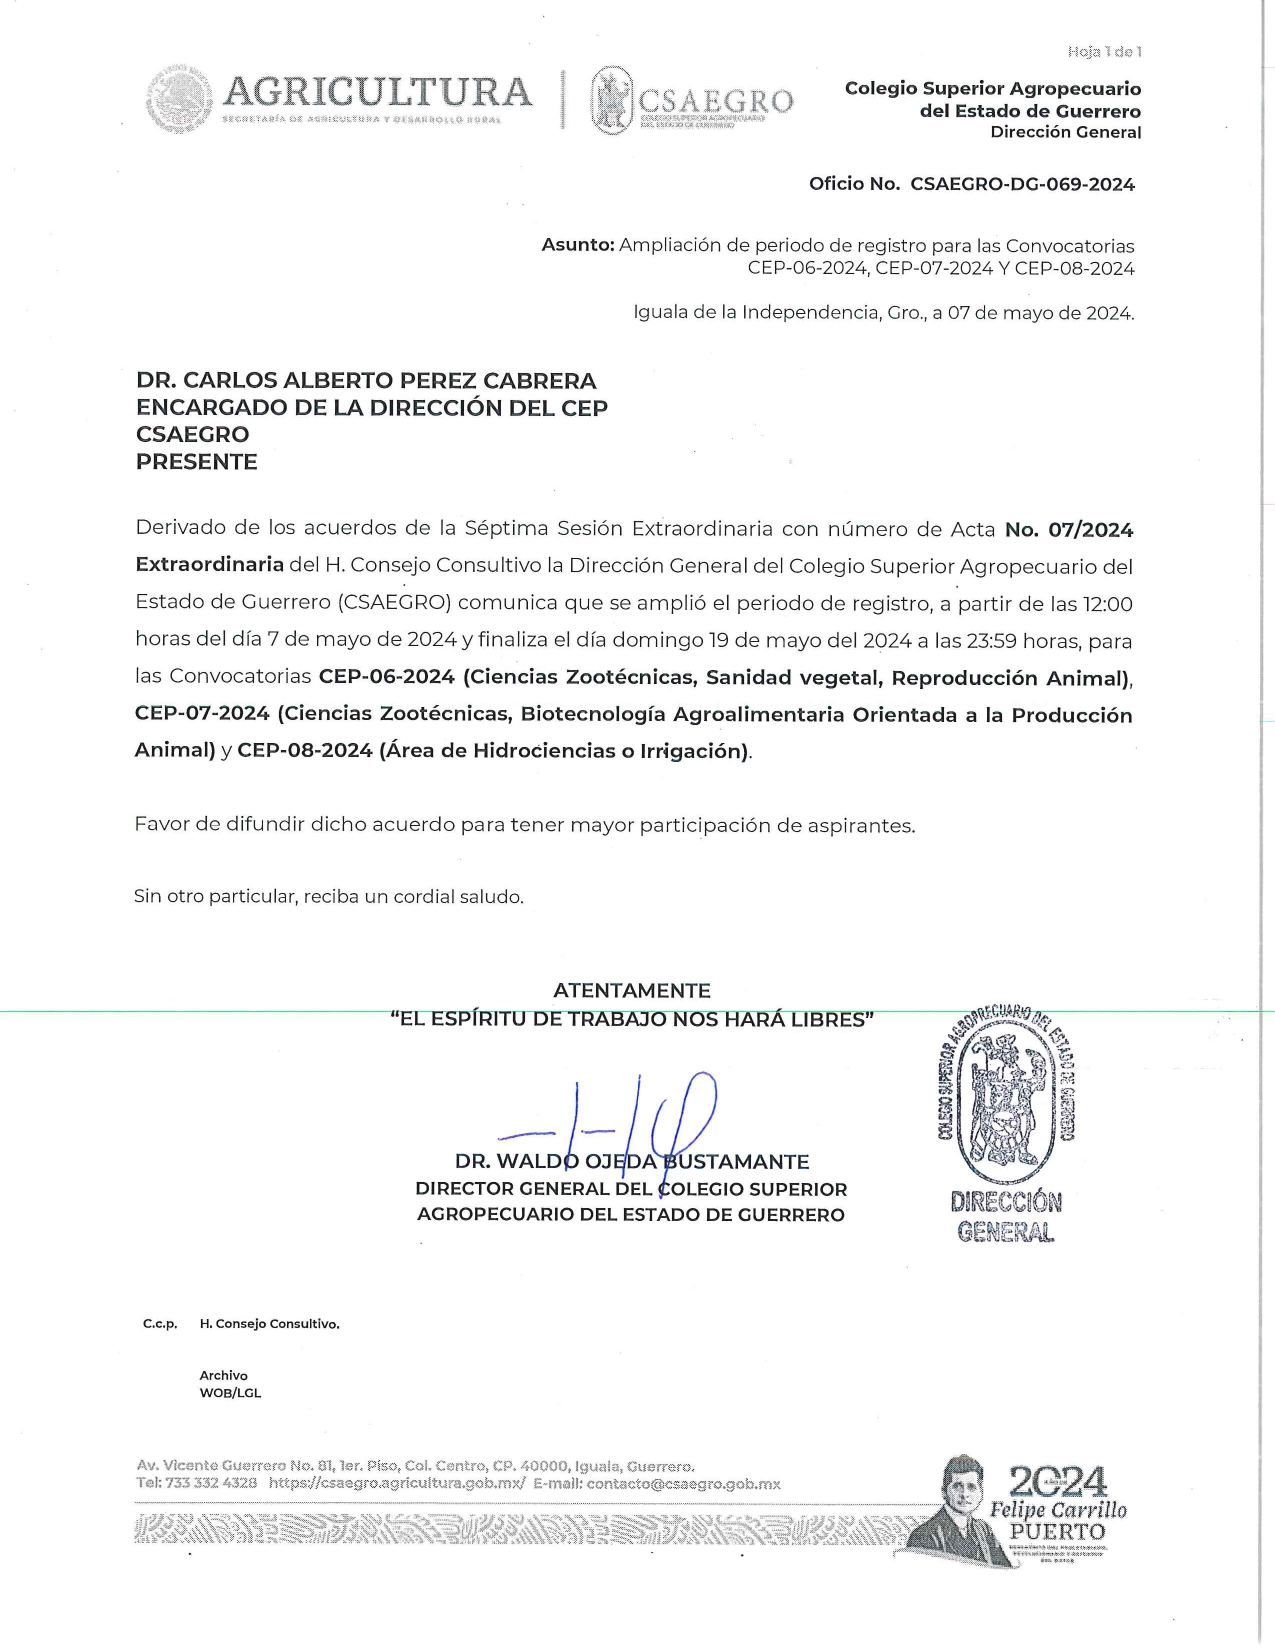 OFICIO NO. CSAEGRO-DG-069-2024 Ampliación de plazo para cierre de Convocatorias CEP